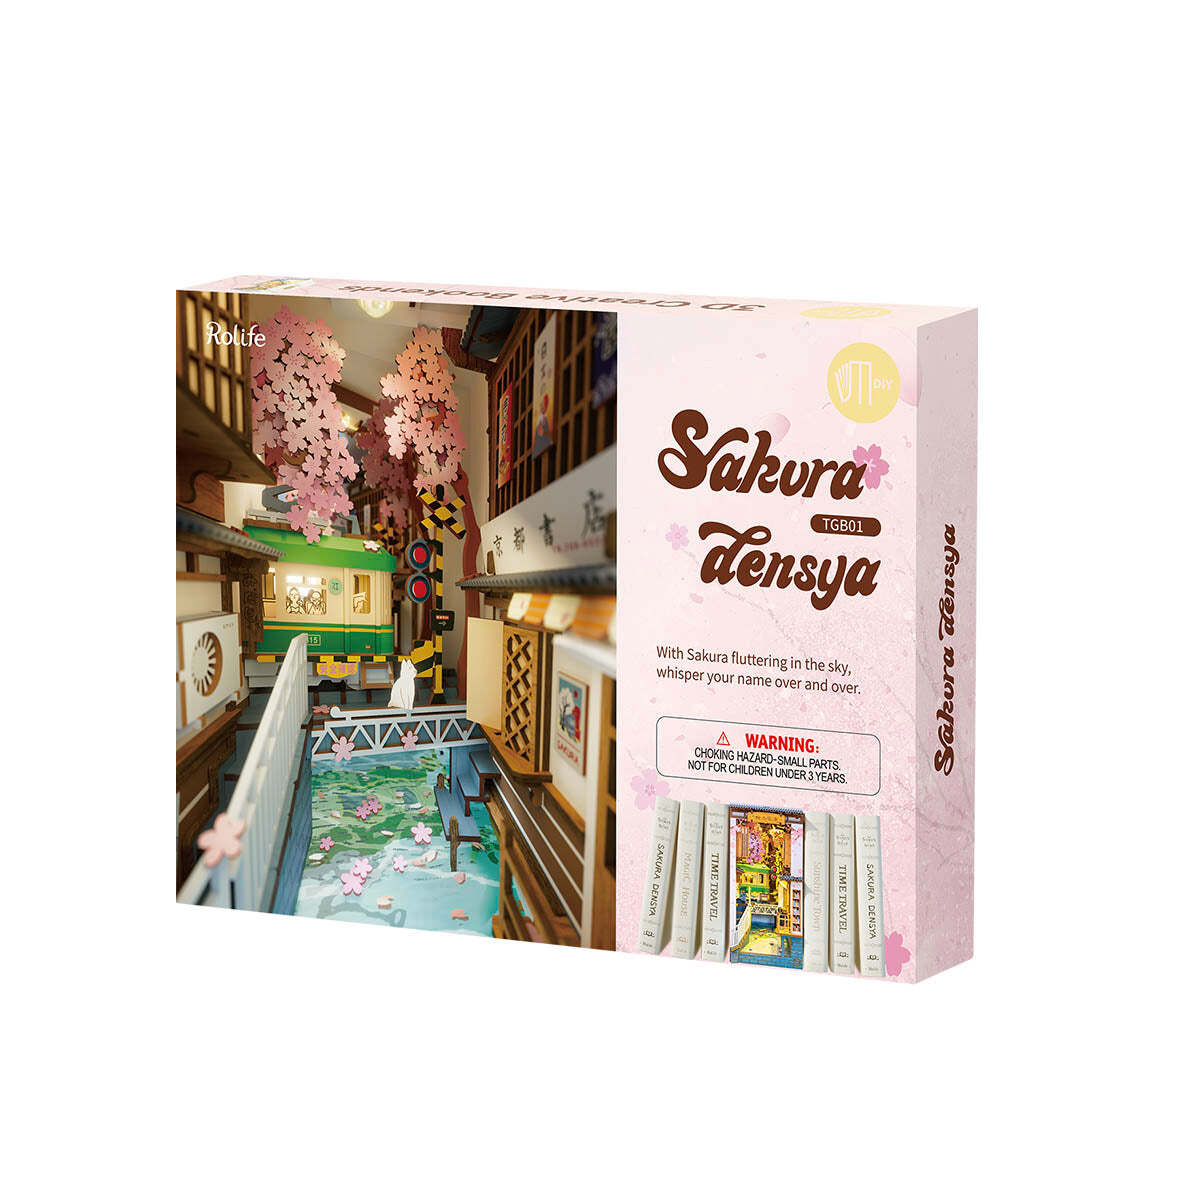 Rolife Book Nook Shelf Insert - Sakura Densya TGB01